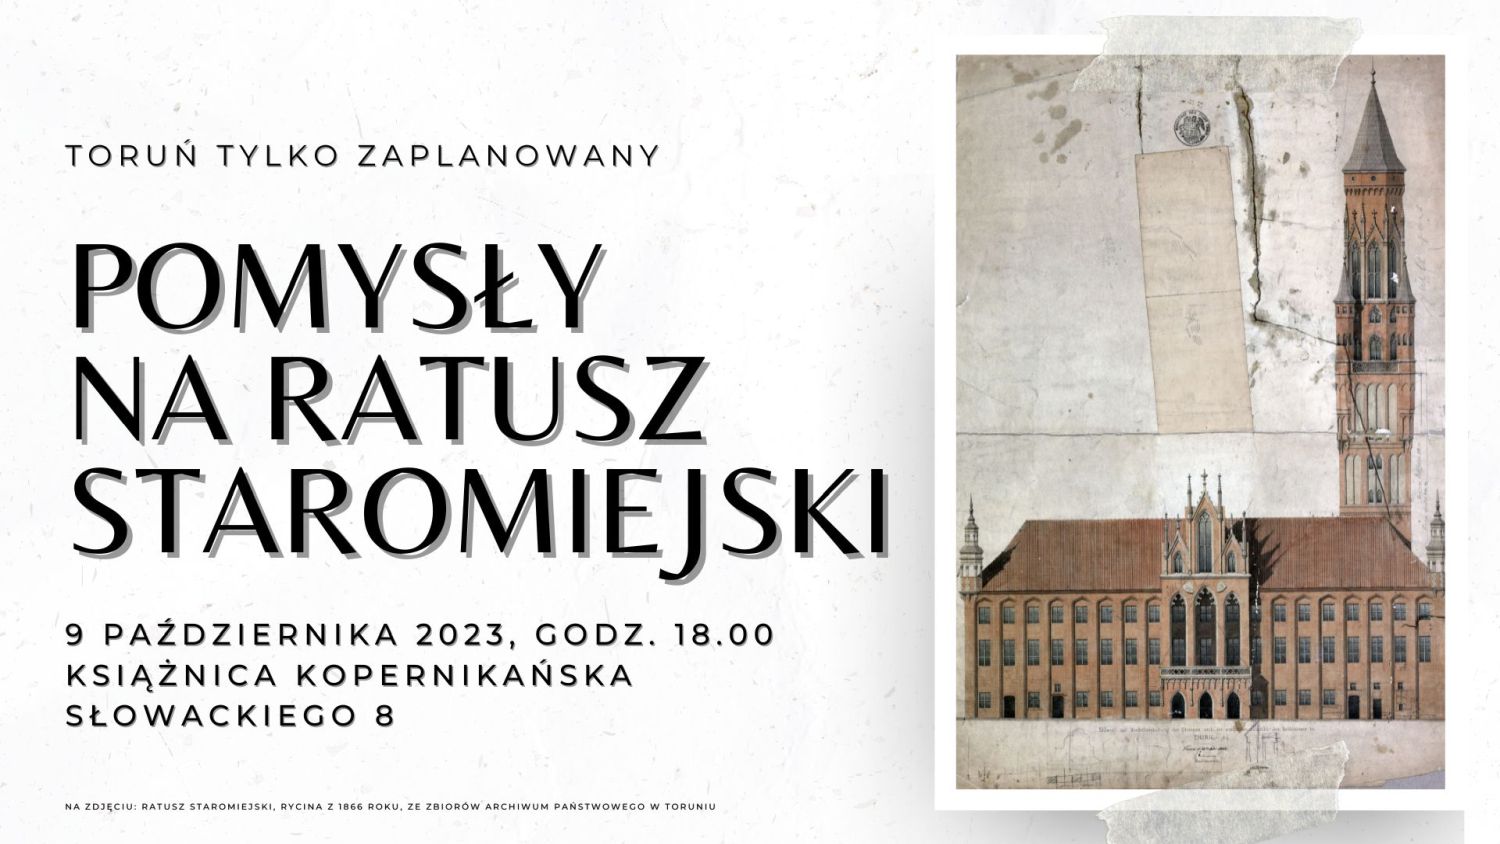 Plakat informacyjny spotkania z cyklu "Toruń tylko zaplanowany" z ryciną z 1866 r. prezentującą Ratusz w Toruniu.